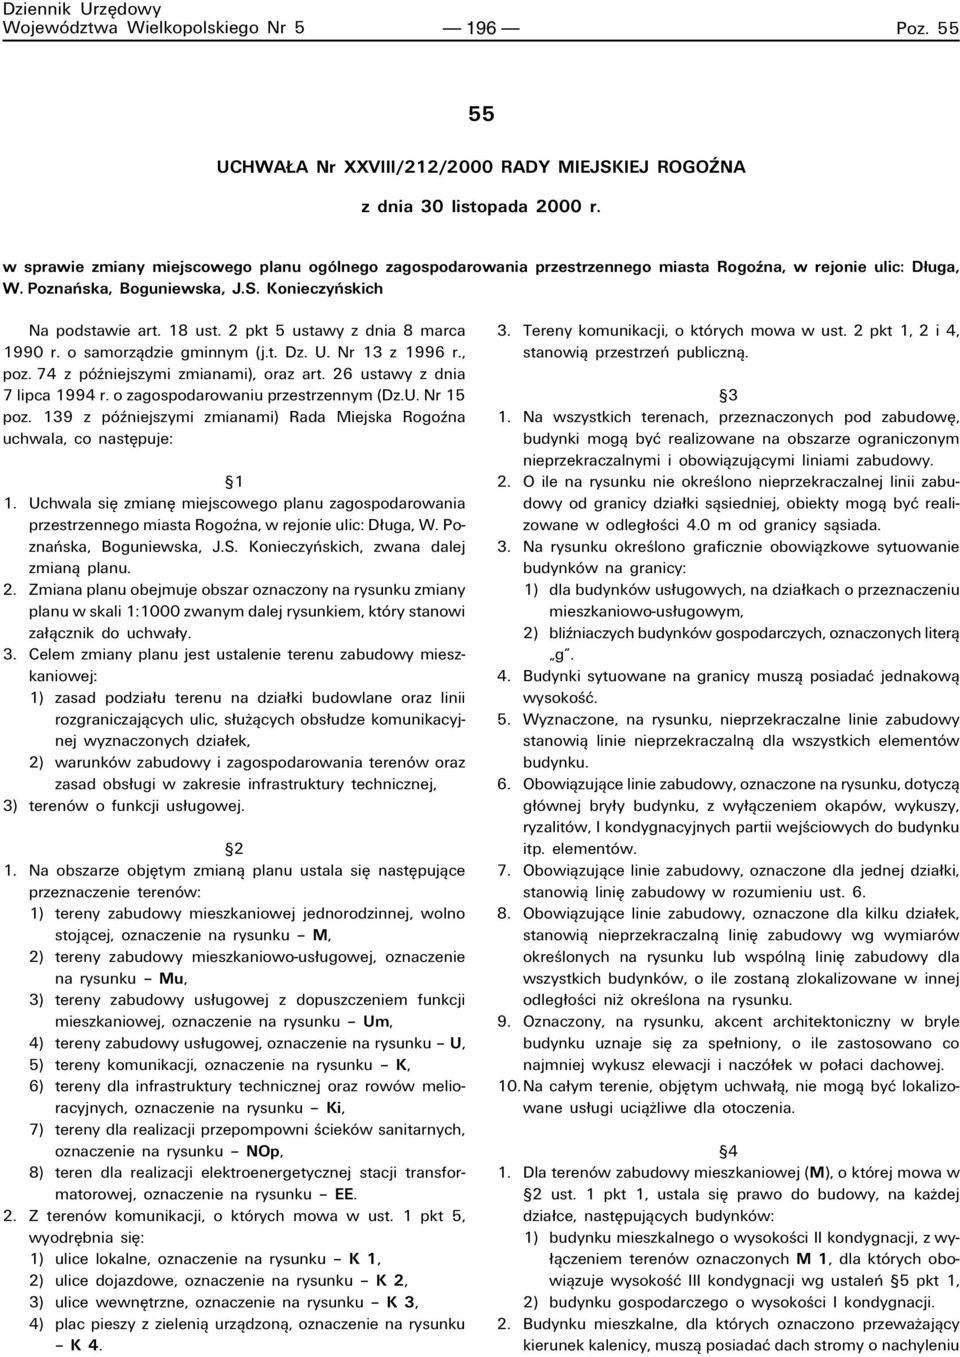 2 pkt 5 ustawy z dnia 8 marca 1990 r. o samorzπdzie gminnym (j.t. Dz. U. Nr 13 z 1996 r., poz. 74 z pûüniejszymi zmianami), oraz art. 26 ustawy z dnia 7 lipca 1994 r.